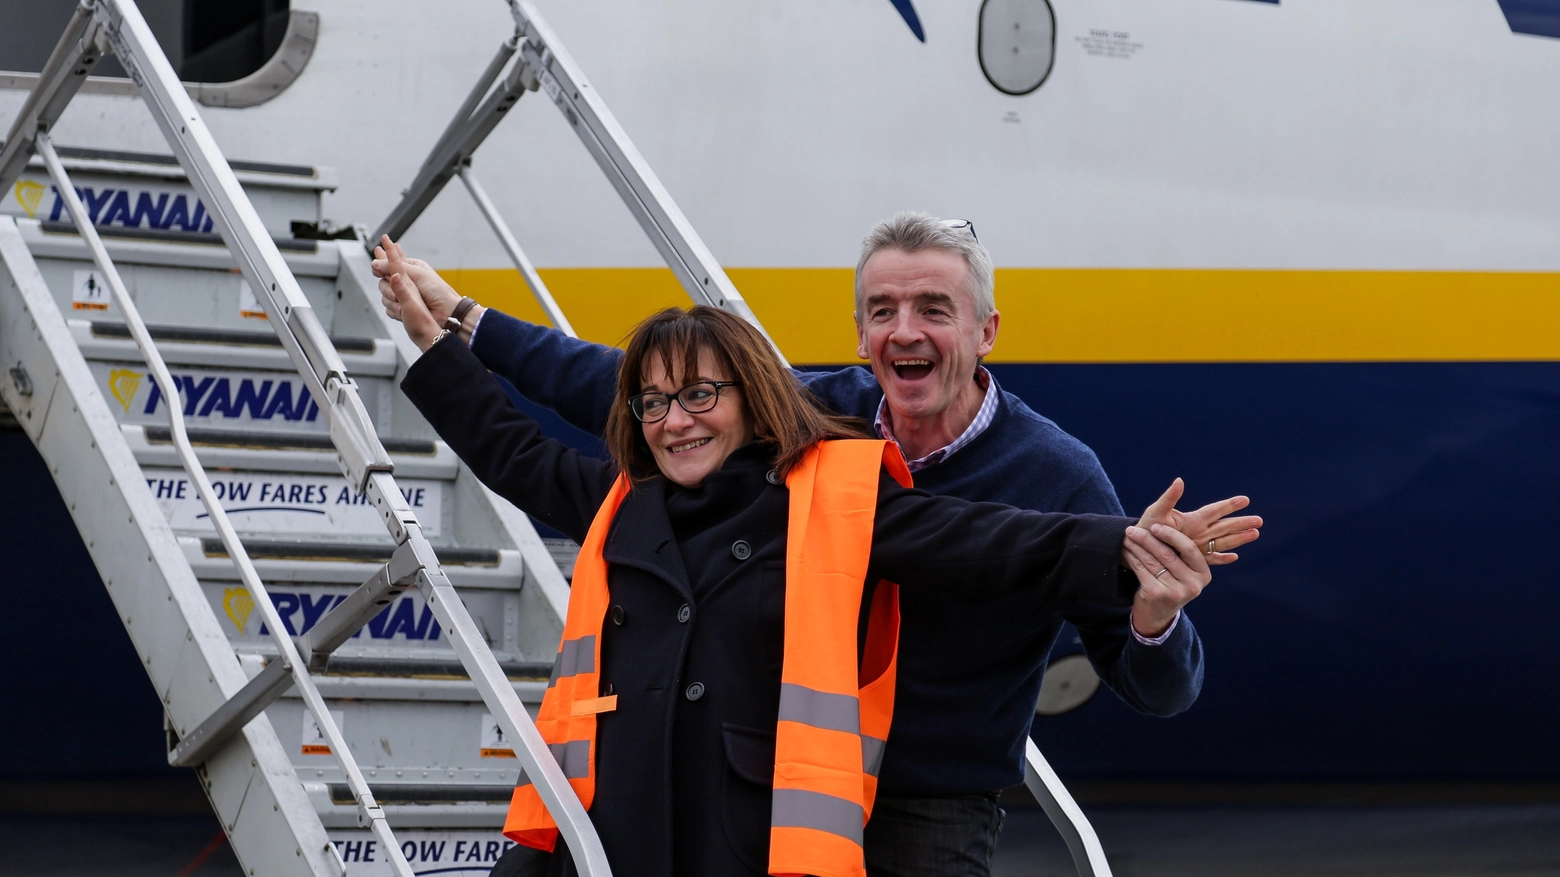 Gina Giani (amministratore delegato dell'aeroporto di Pisa) con Micheal O'Leary di Ryanair